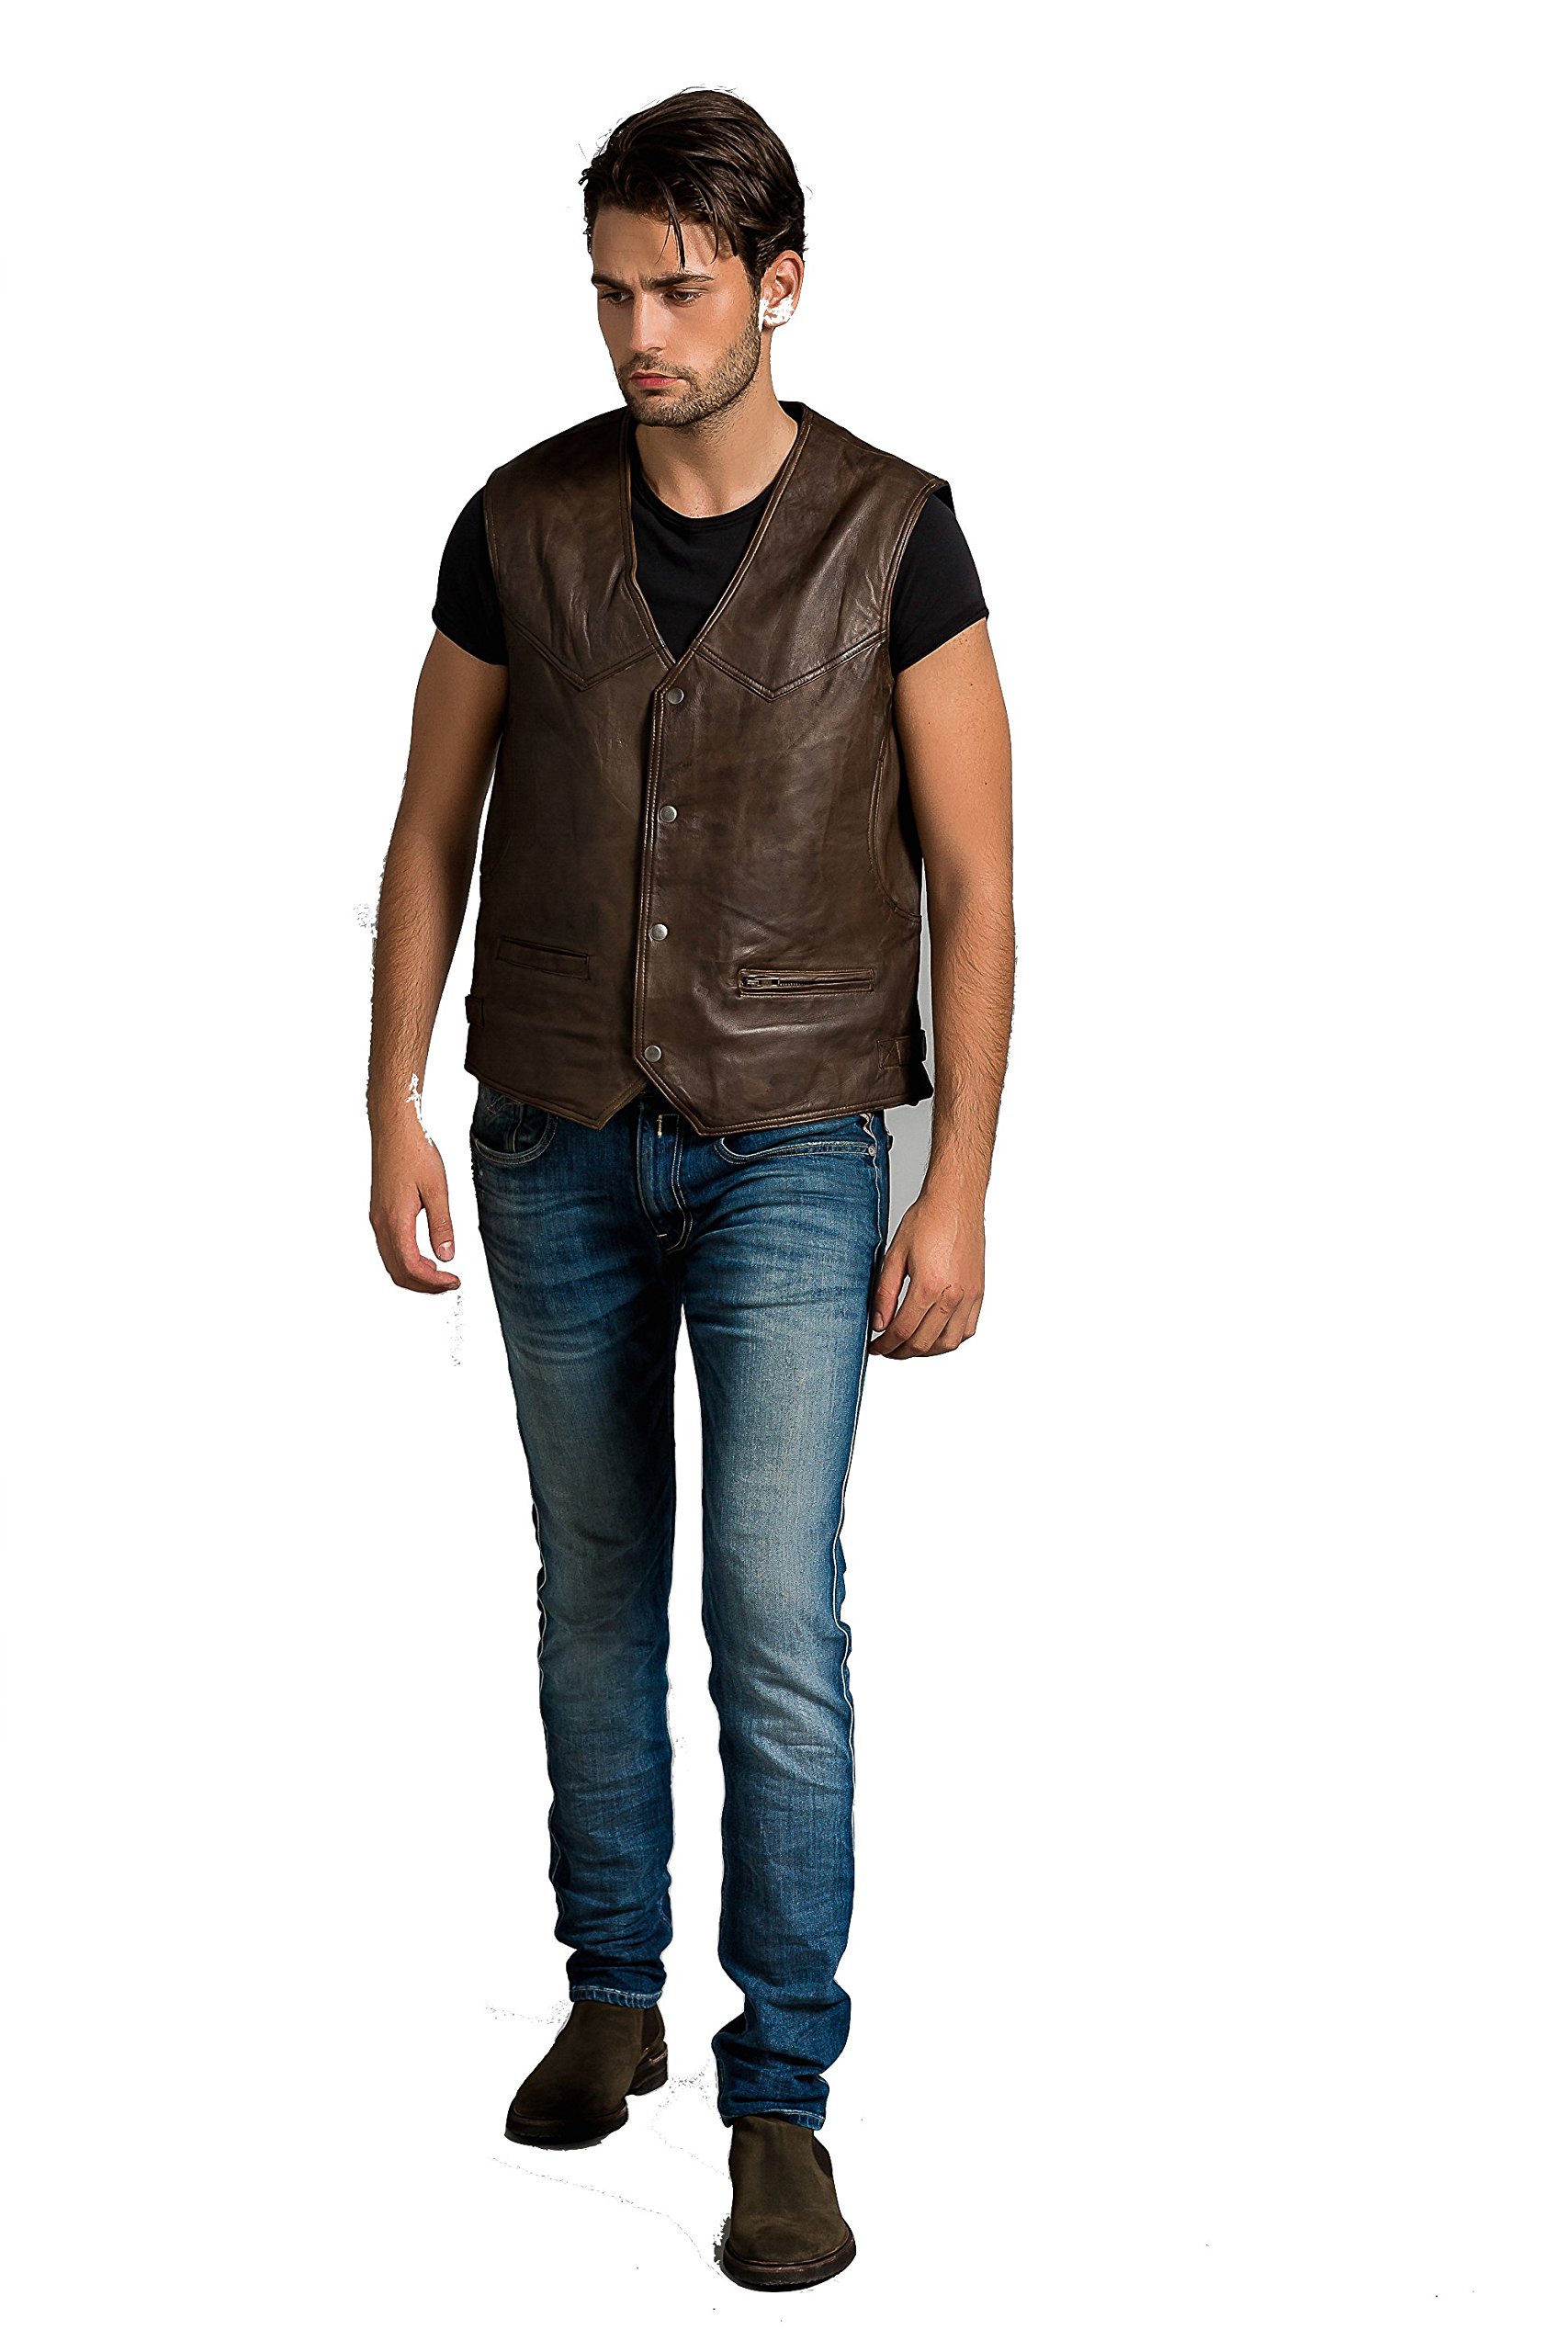 Billy Waistcoat, Ontorio Brown, Size 4XL von Urban Leather